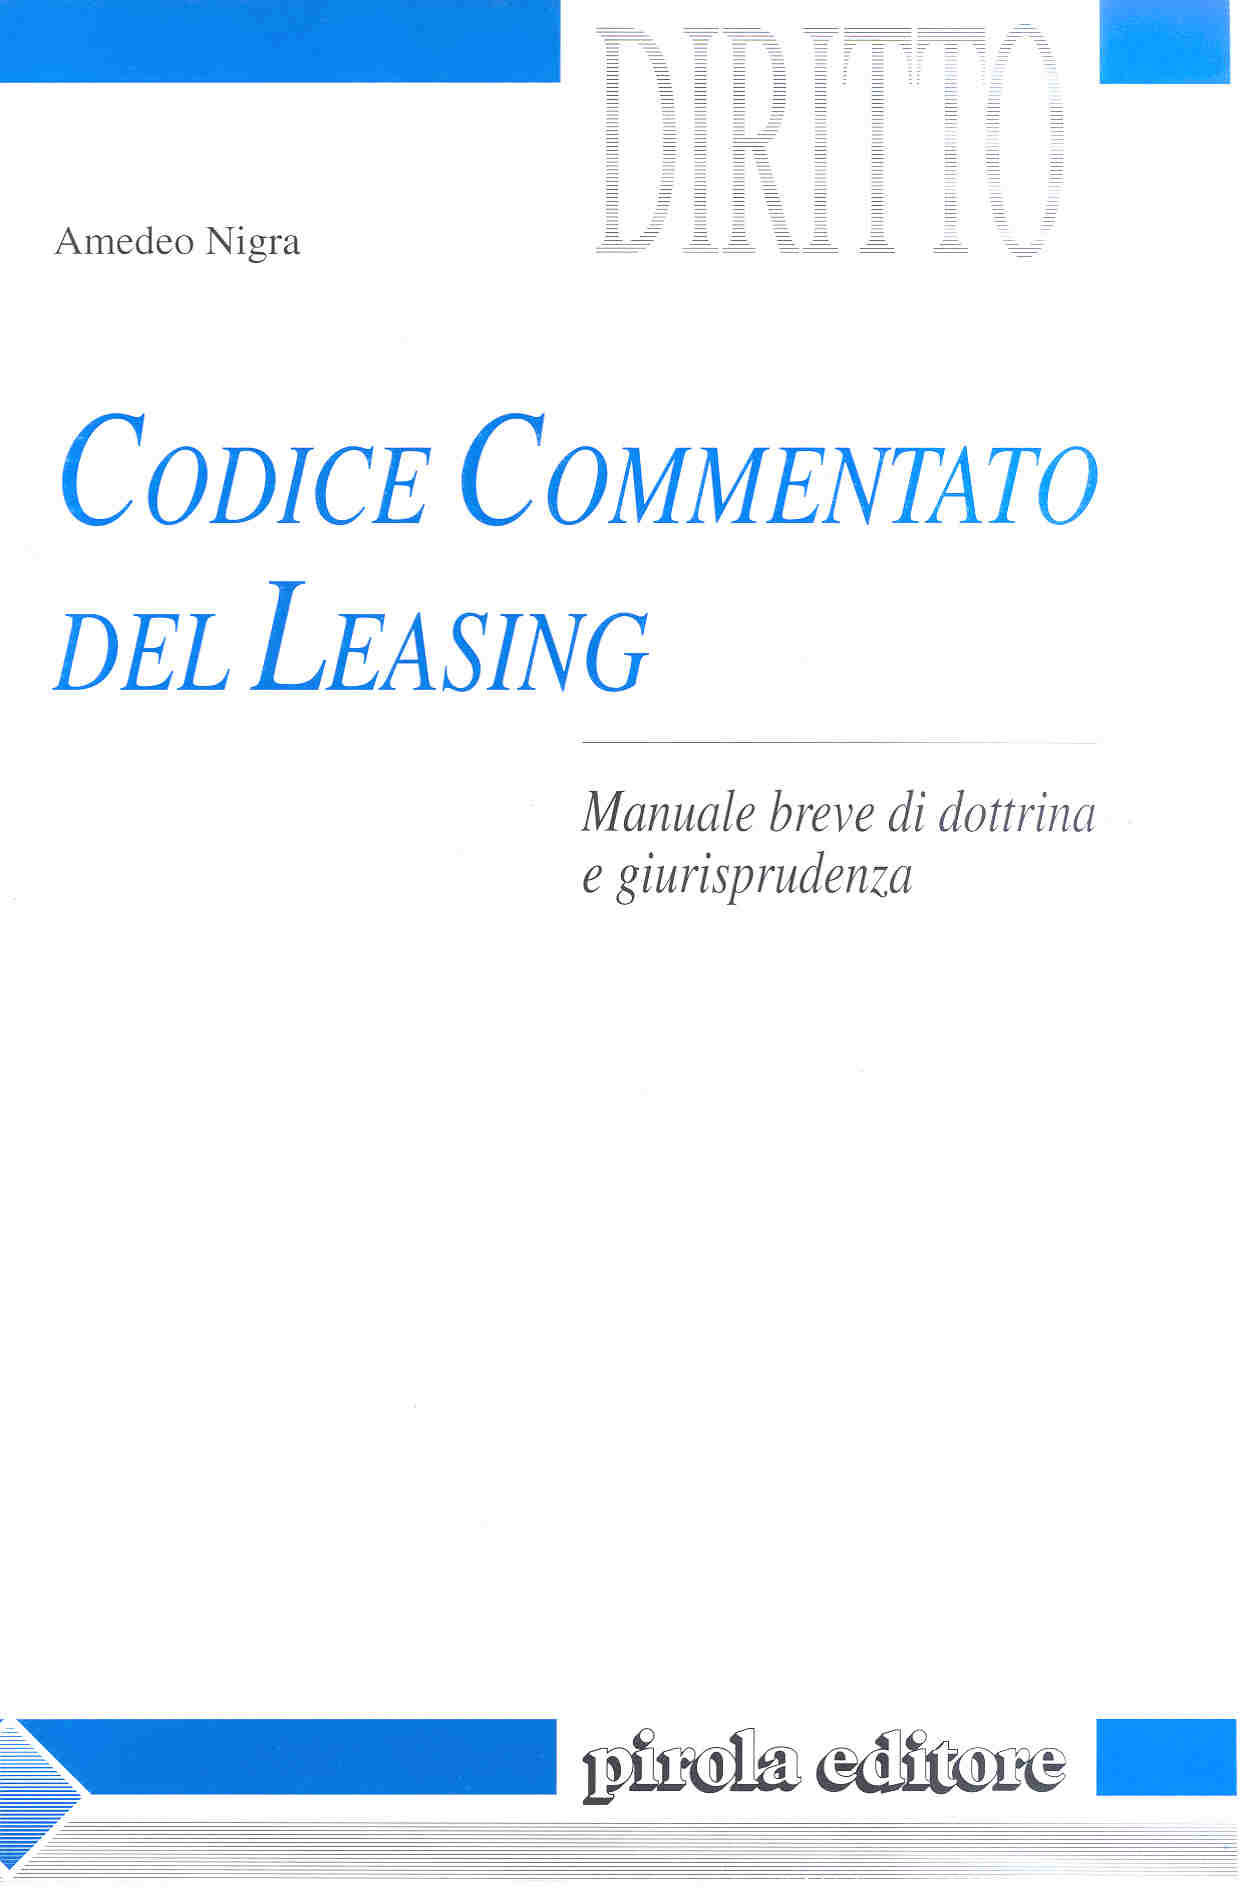 Codice commentato del leasing di Amedeo Nigra